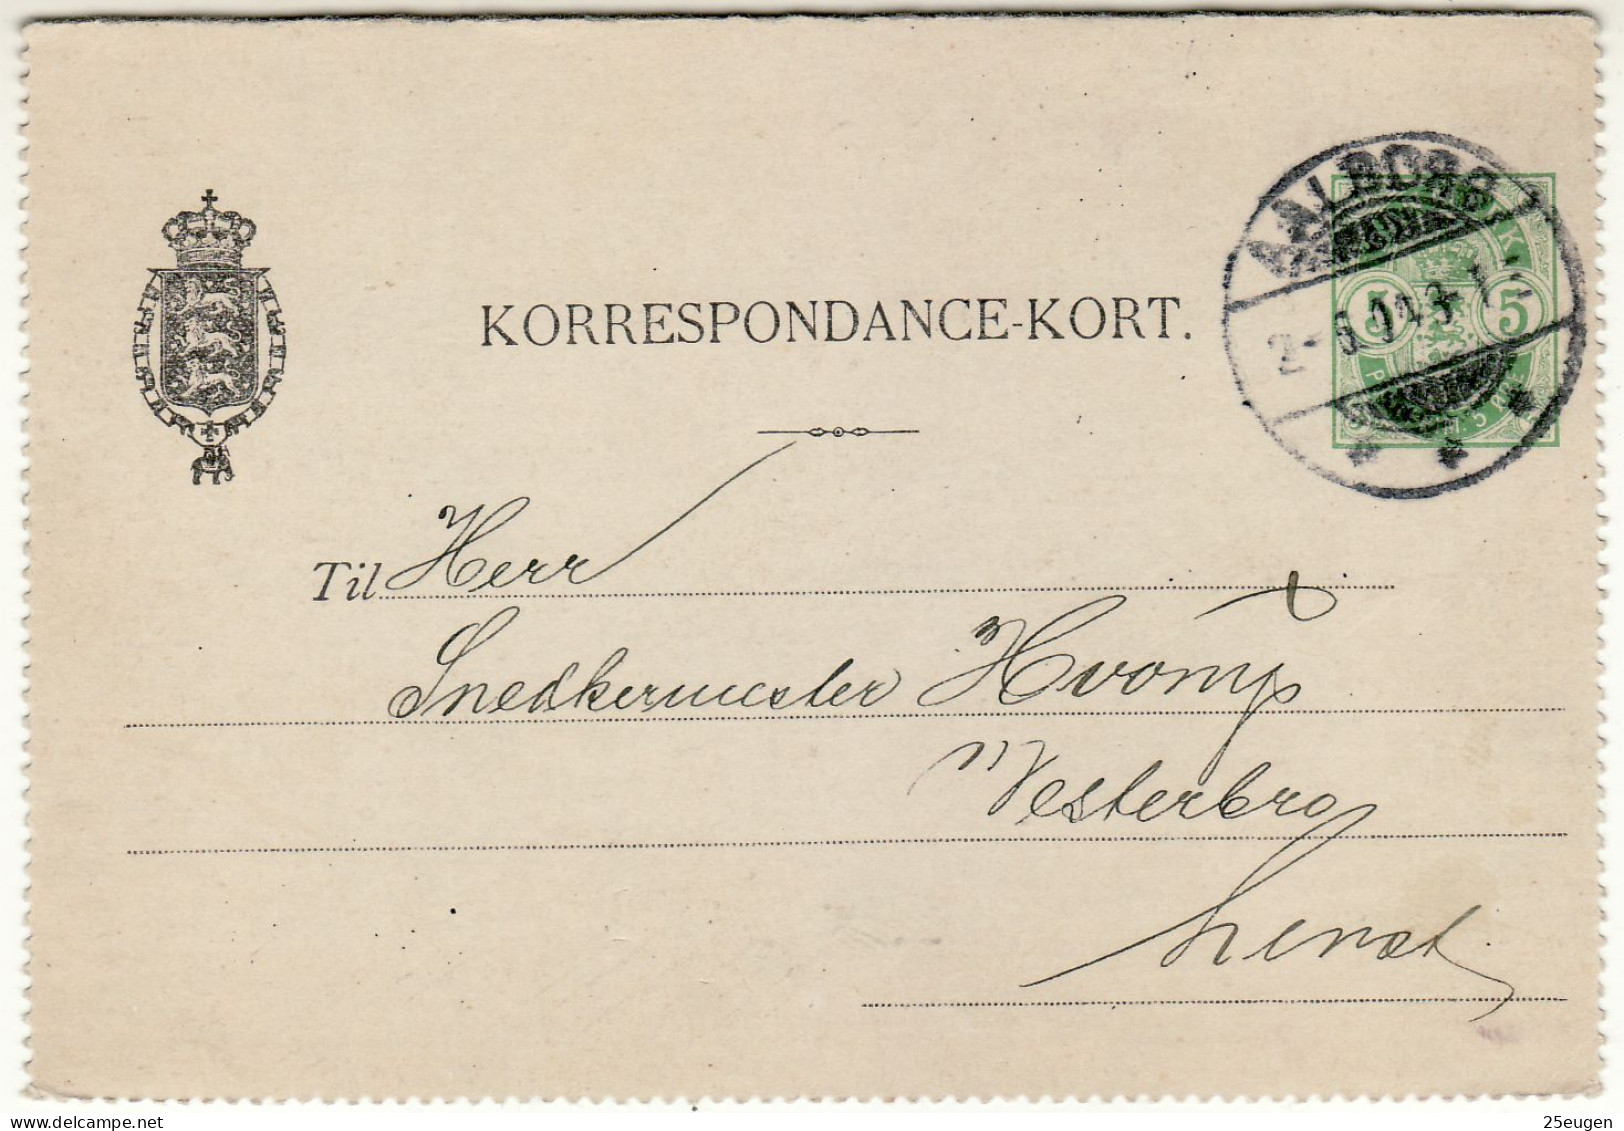 DENMARK 1904 CARD LETTER MiNr K 14 SENT FROM AALBORG - Enteros Postales